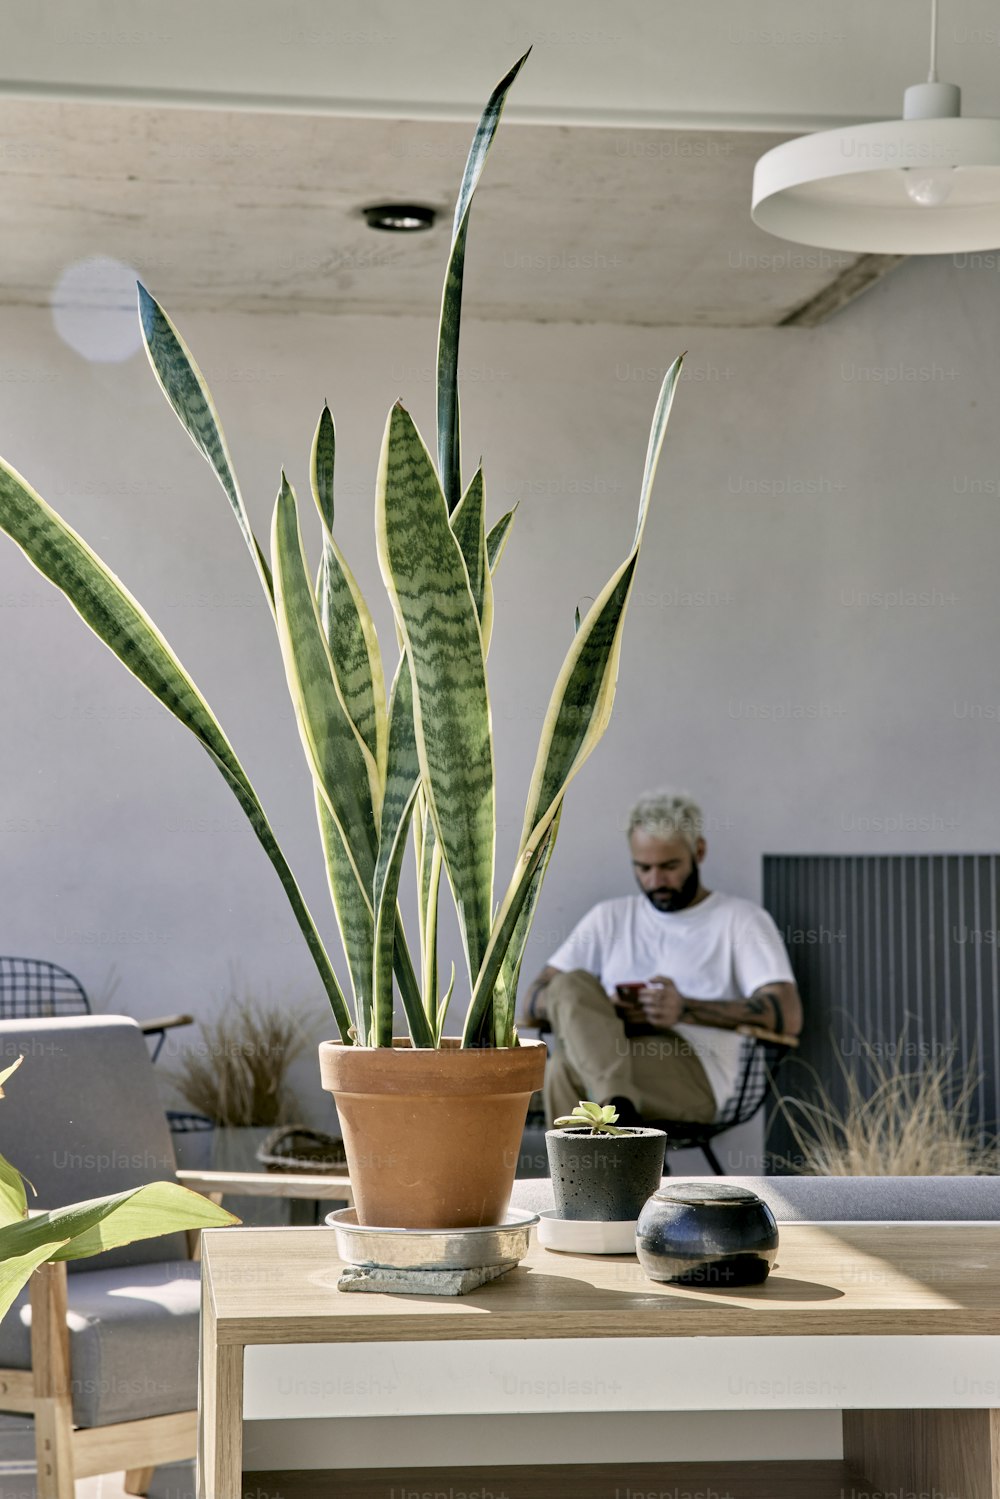 Un hombre sentado en una silla junto a una planta en maceta